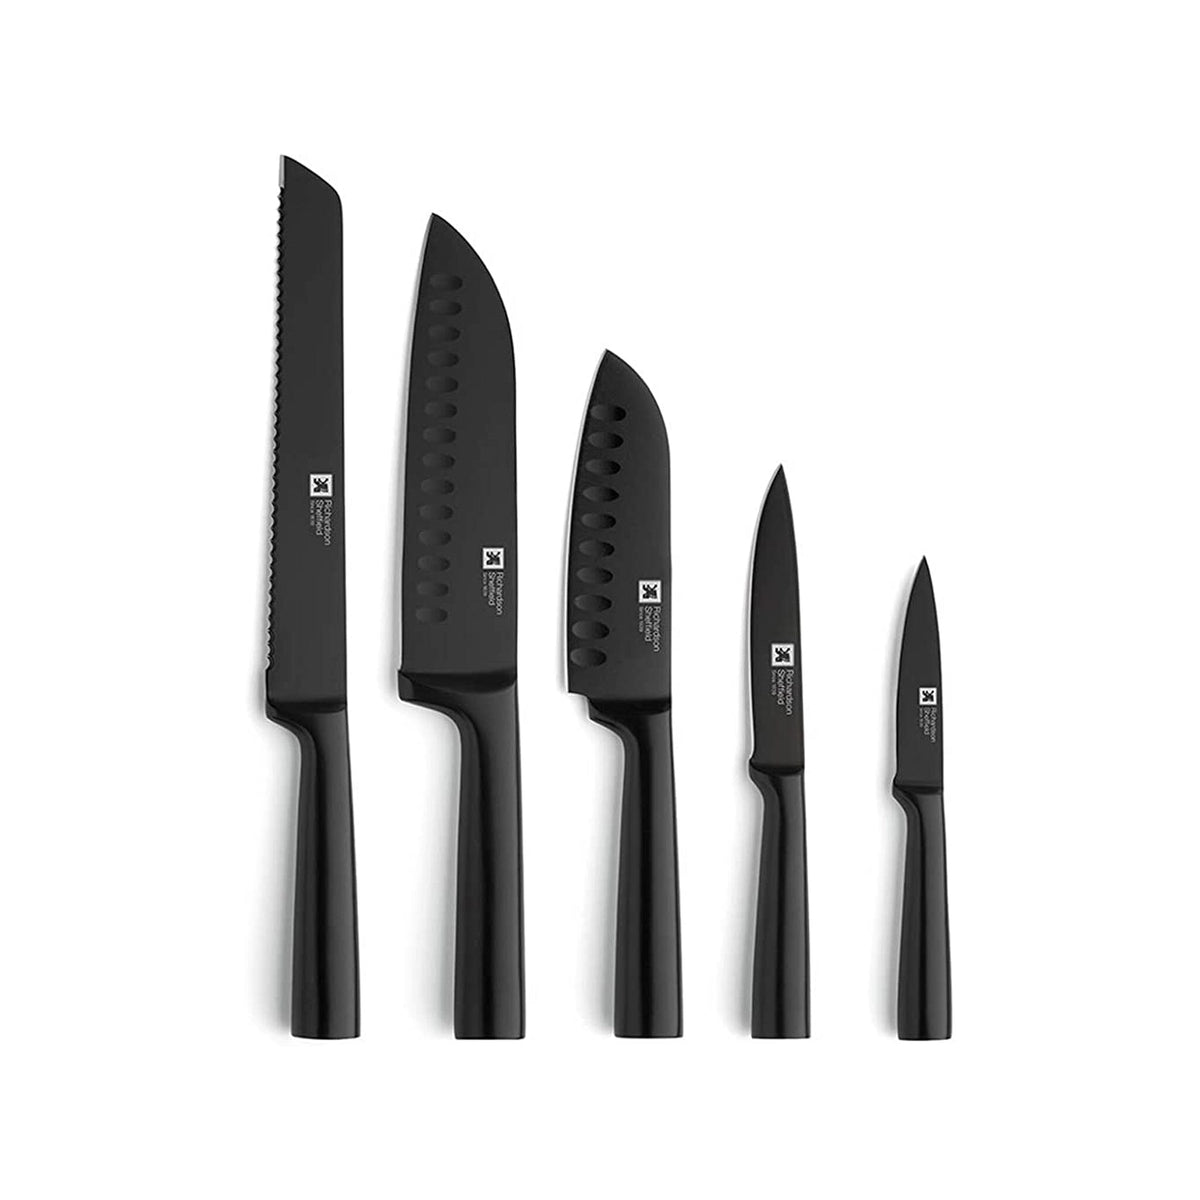 Alemania - Juego de cuchillos de cocina de 23 piezas con bloque, juego de  cuchillos de chef de acero inoxidable de alto carbono, juego de cuchillos